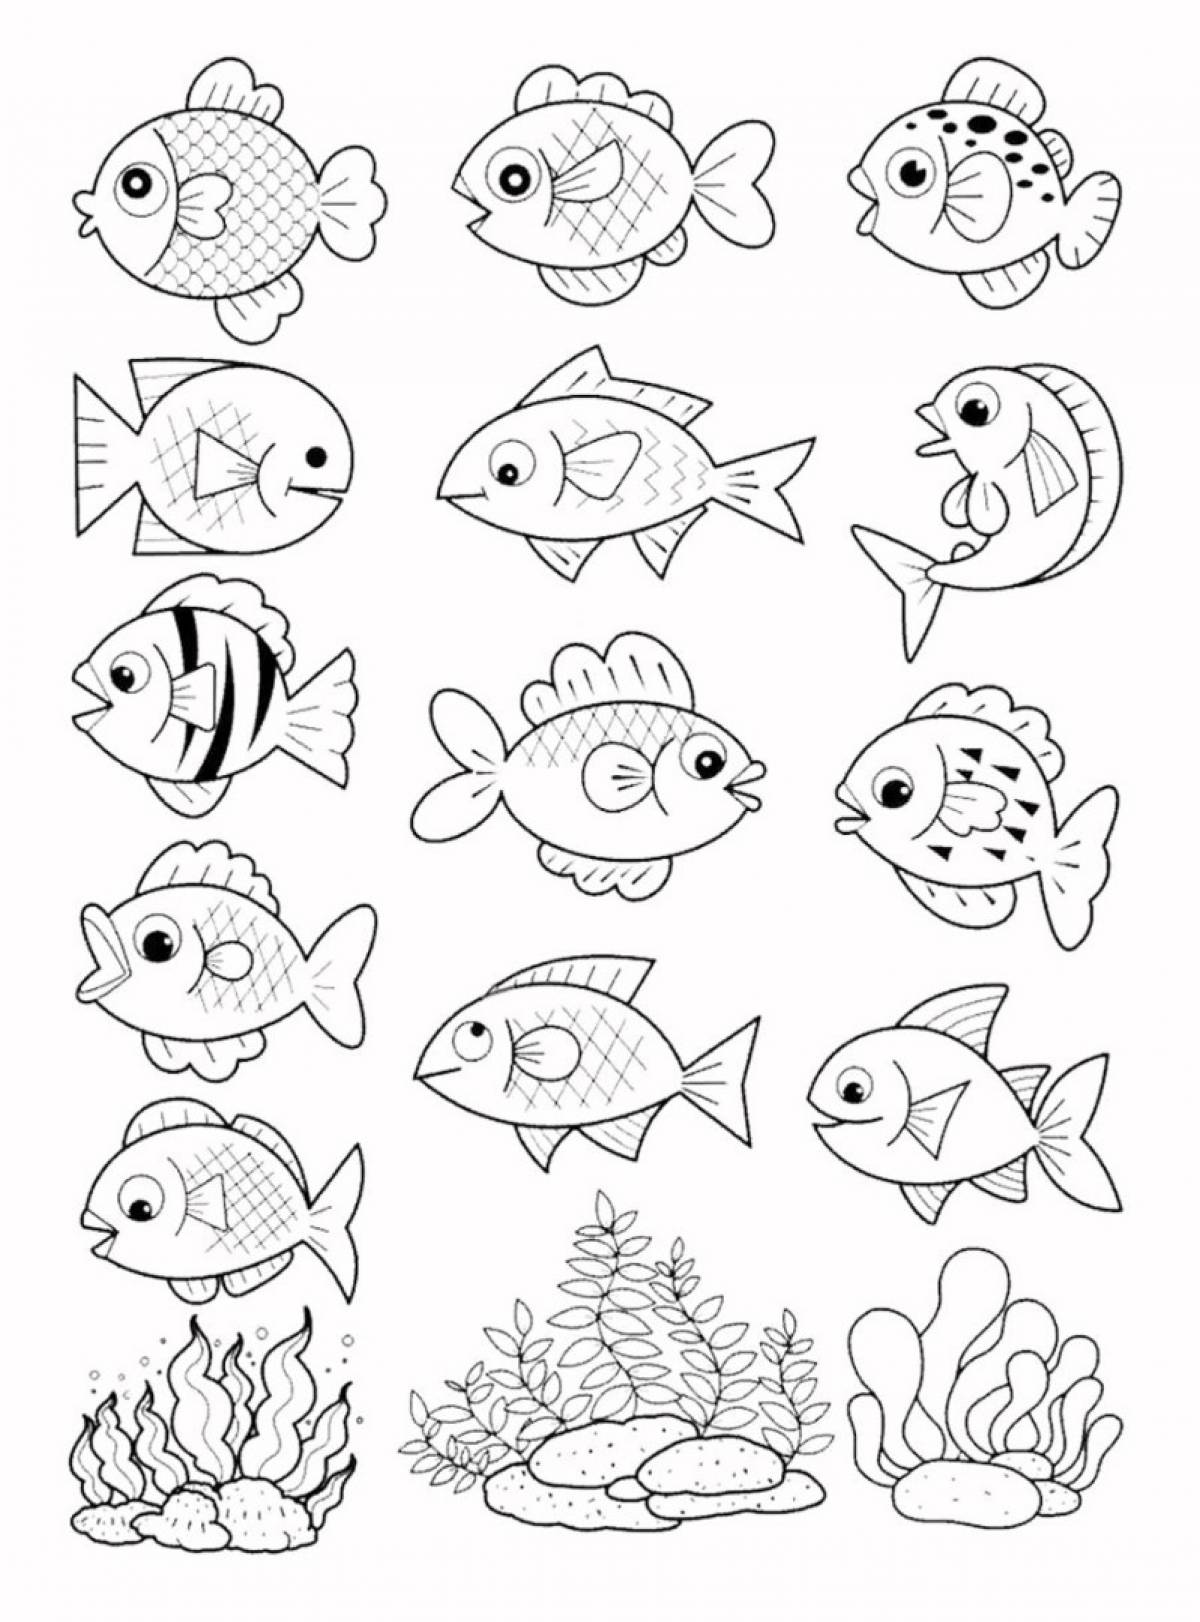 Violent fish in the aquarium coloring book